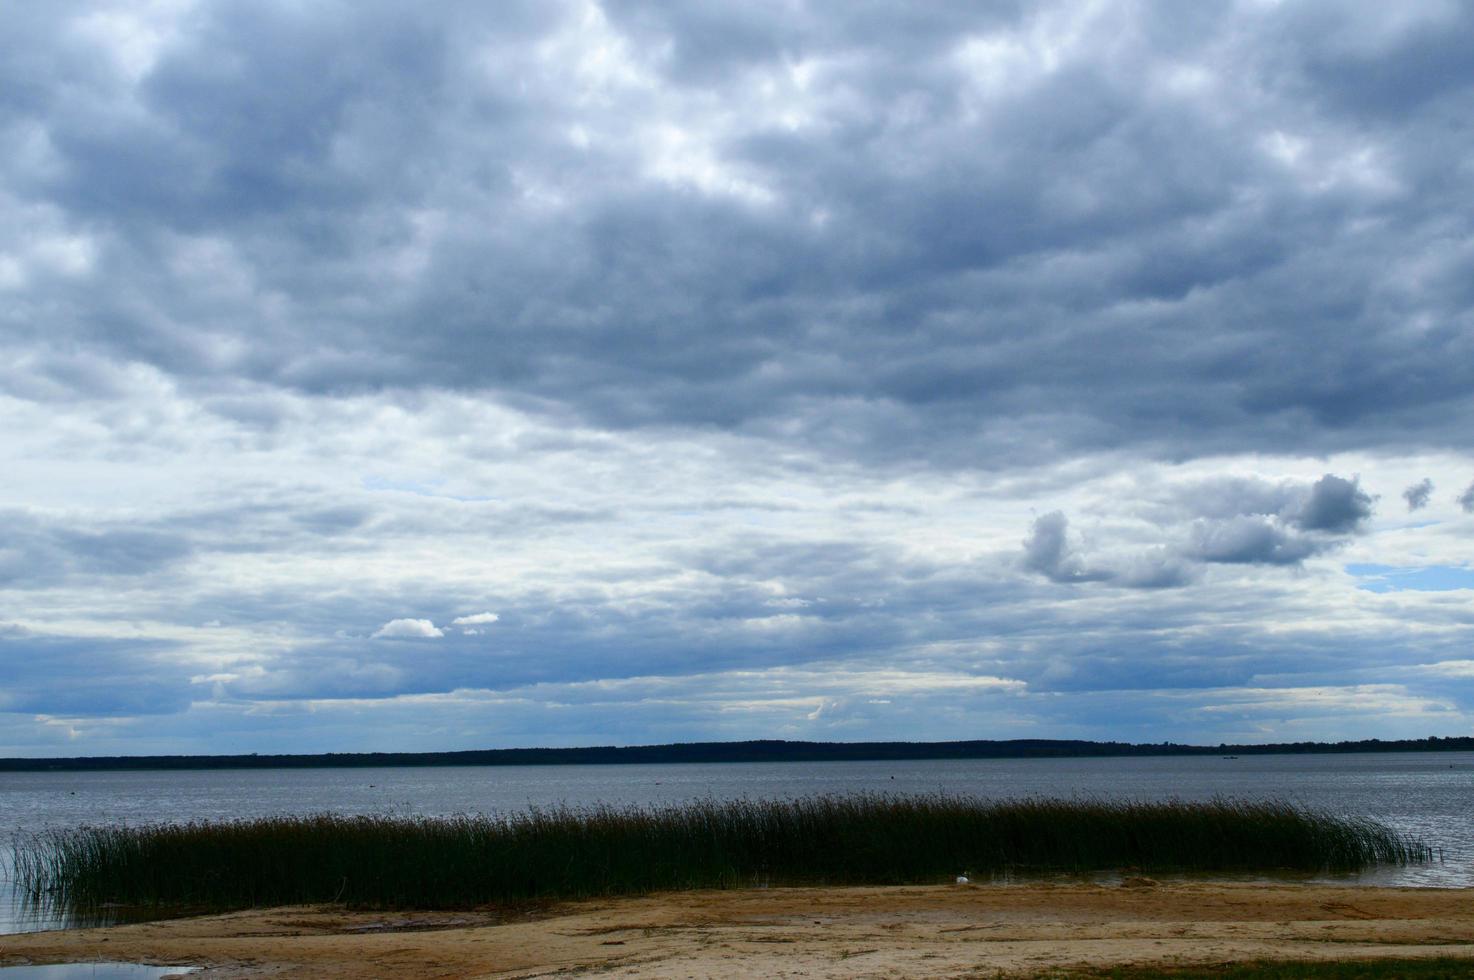 vue panoramique sur le lac avec de l'eau et des plantes sur la rive, des roseaux et des nuages bleus sombres dans le ciel photo